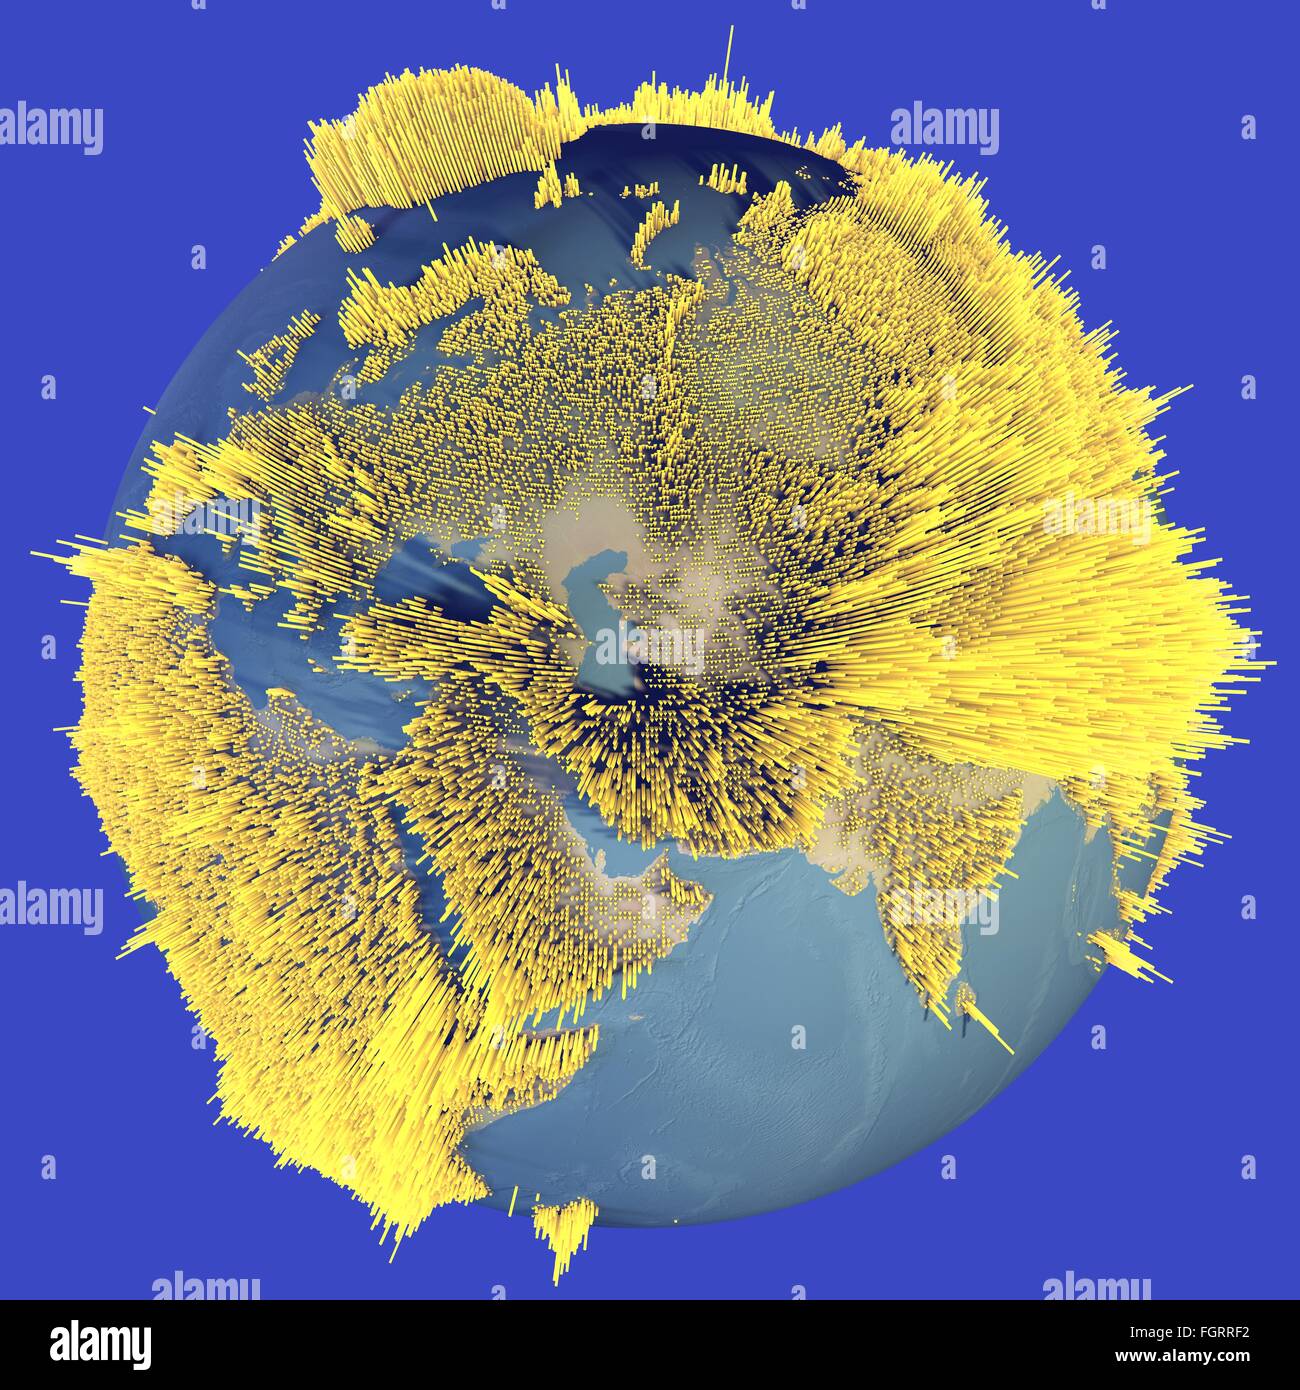 Abstract world globe, carte des hauteurs, des histogrammes Banque D'Images